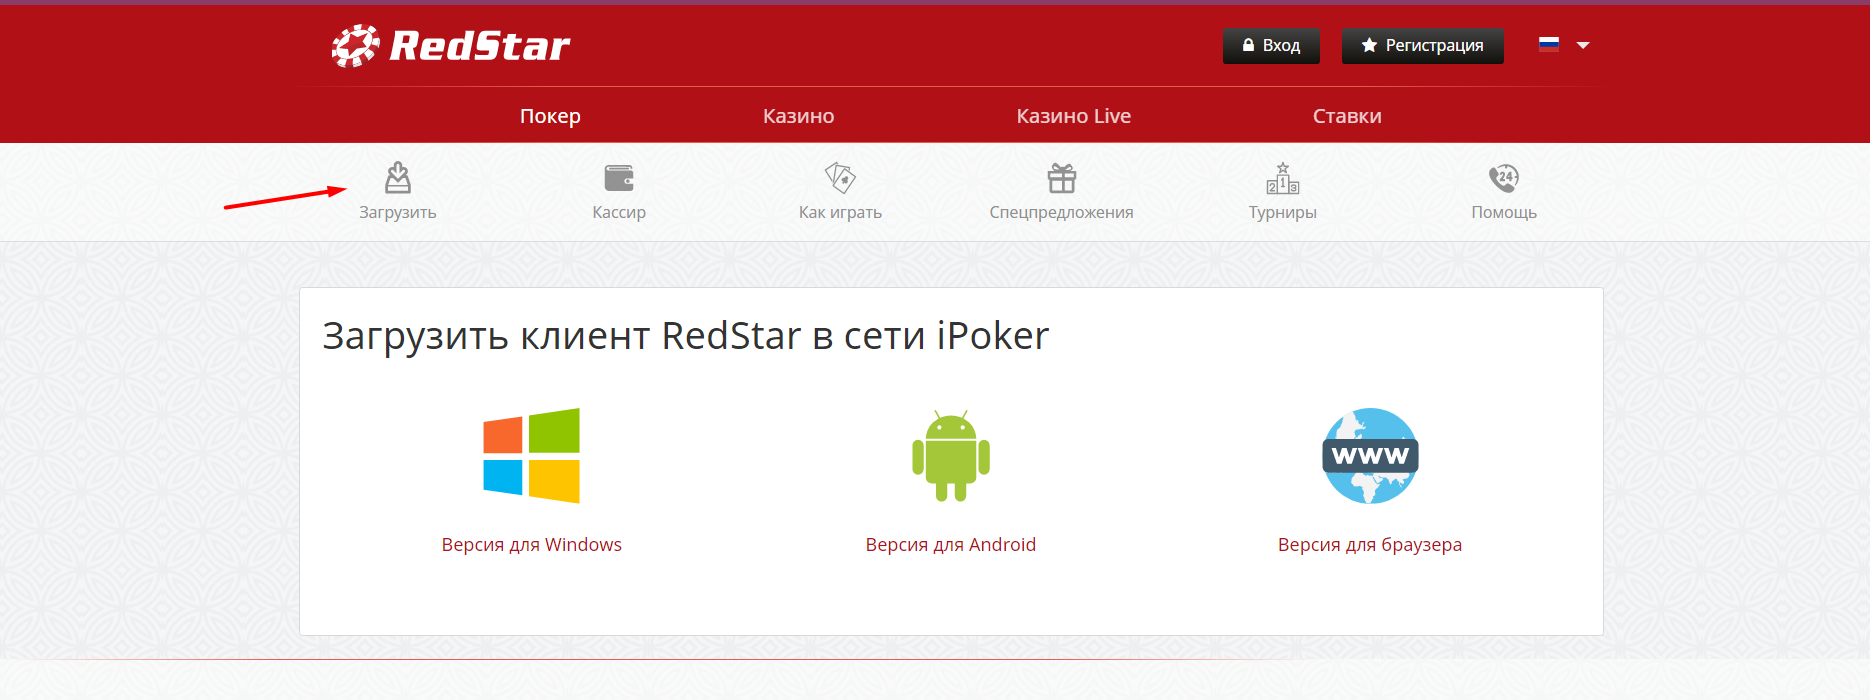 Обзор покер-рума RedStar — что изменилось после перехода в сеть iPoker 1